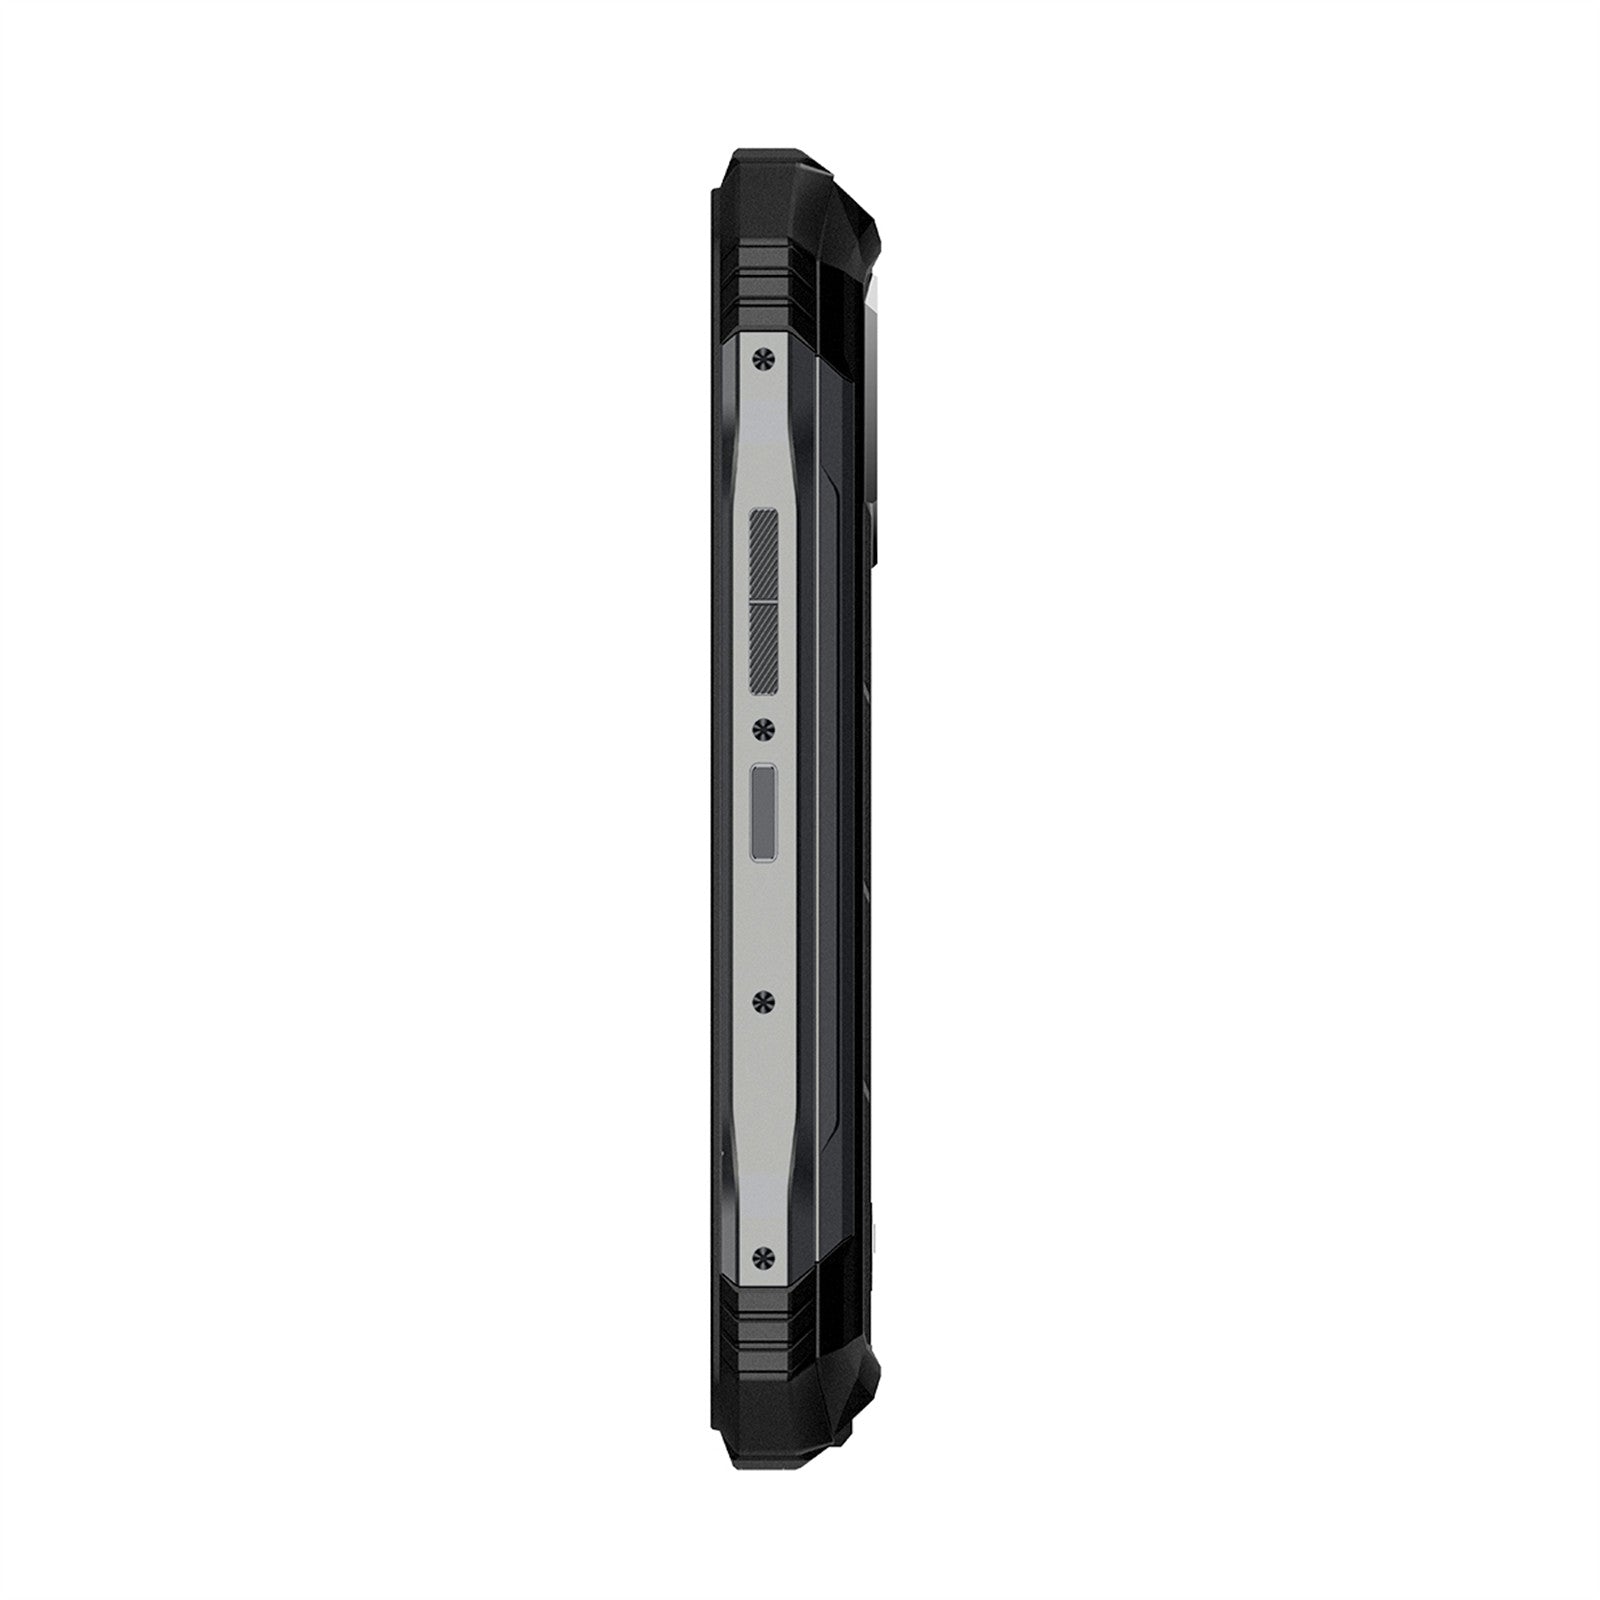 DOOGEE® S100 Pro Teléfono robusto Helio G99 6.58 FHD+ 120hz 22000mAh